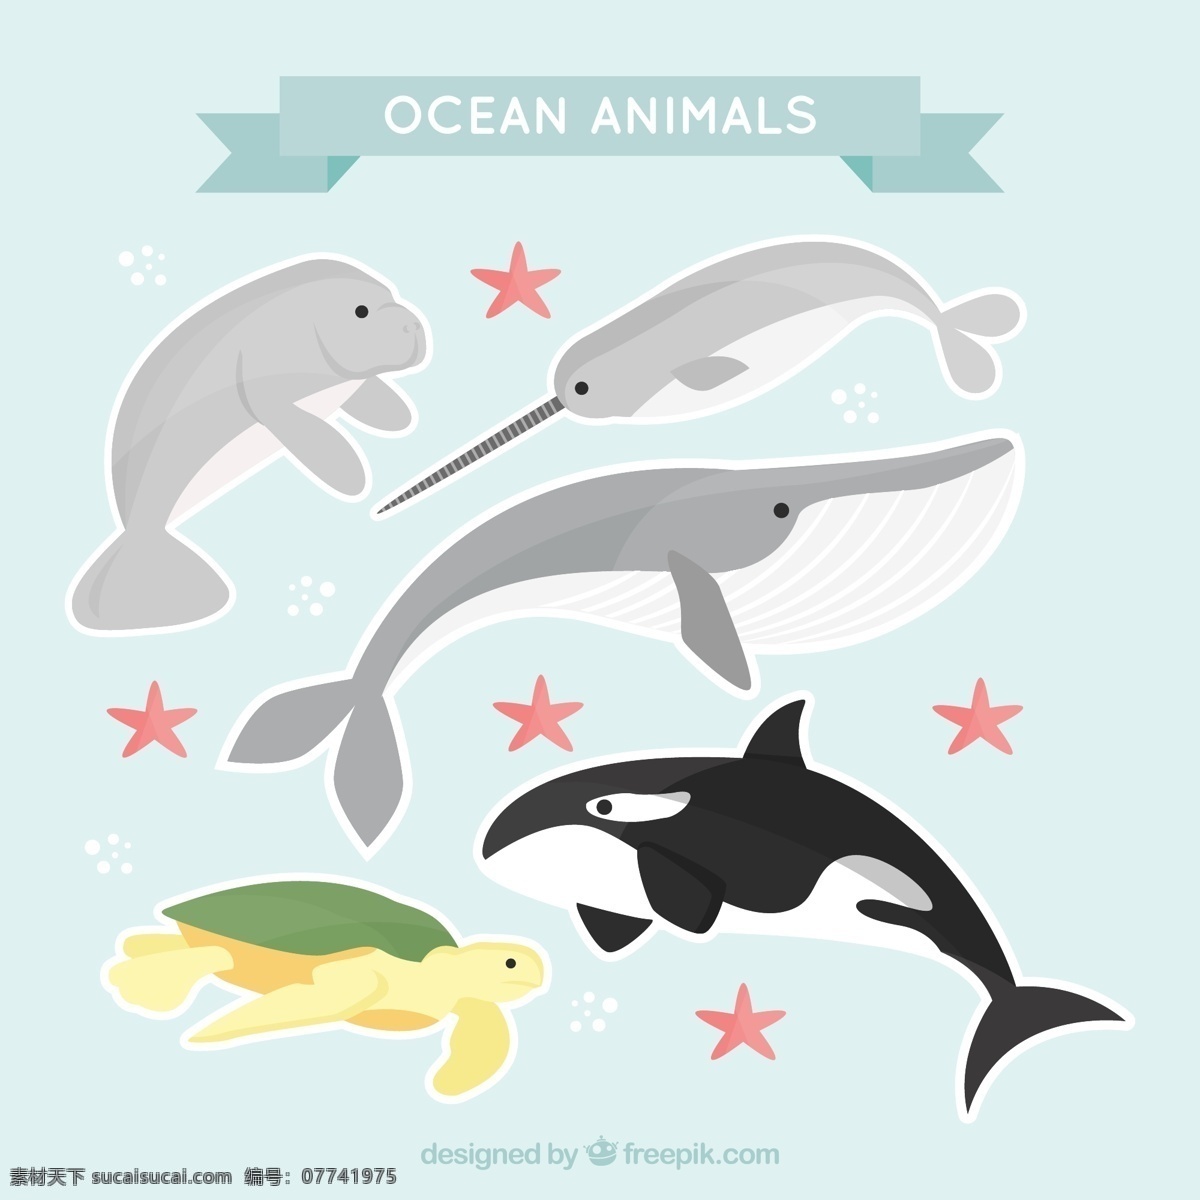 海底 海洋鱼类 动物 元素 设计素材 创意设计 小动物 卡通 可爱 海洋生物